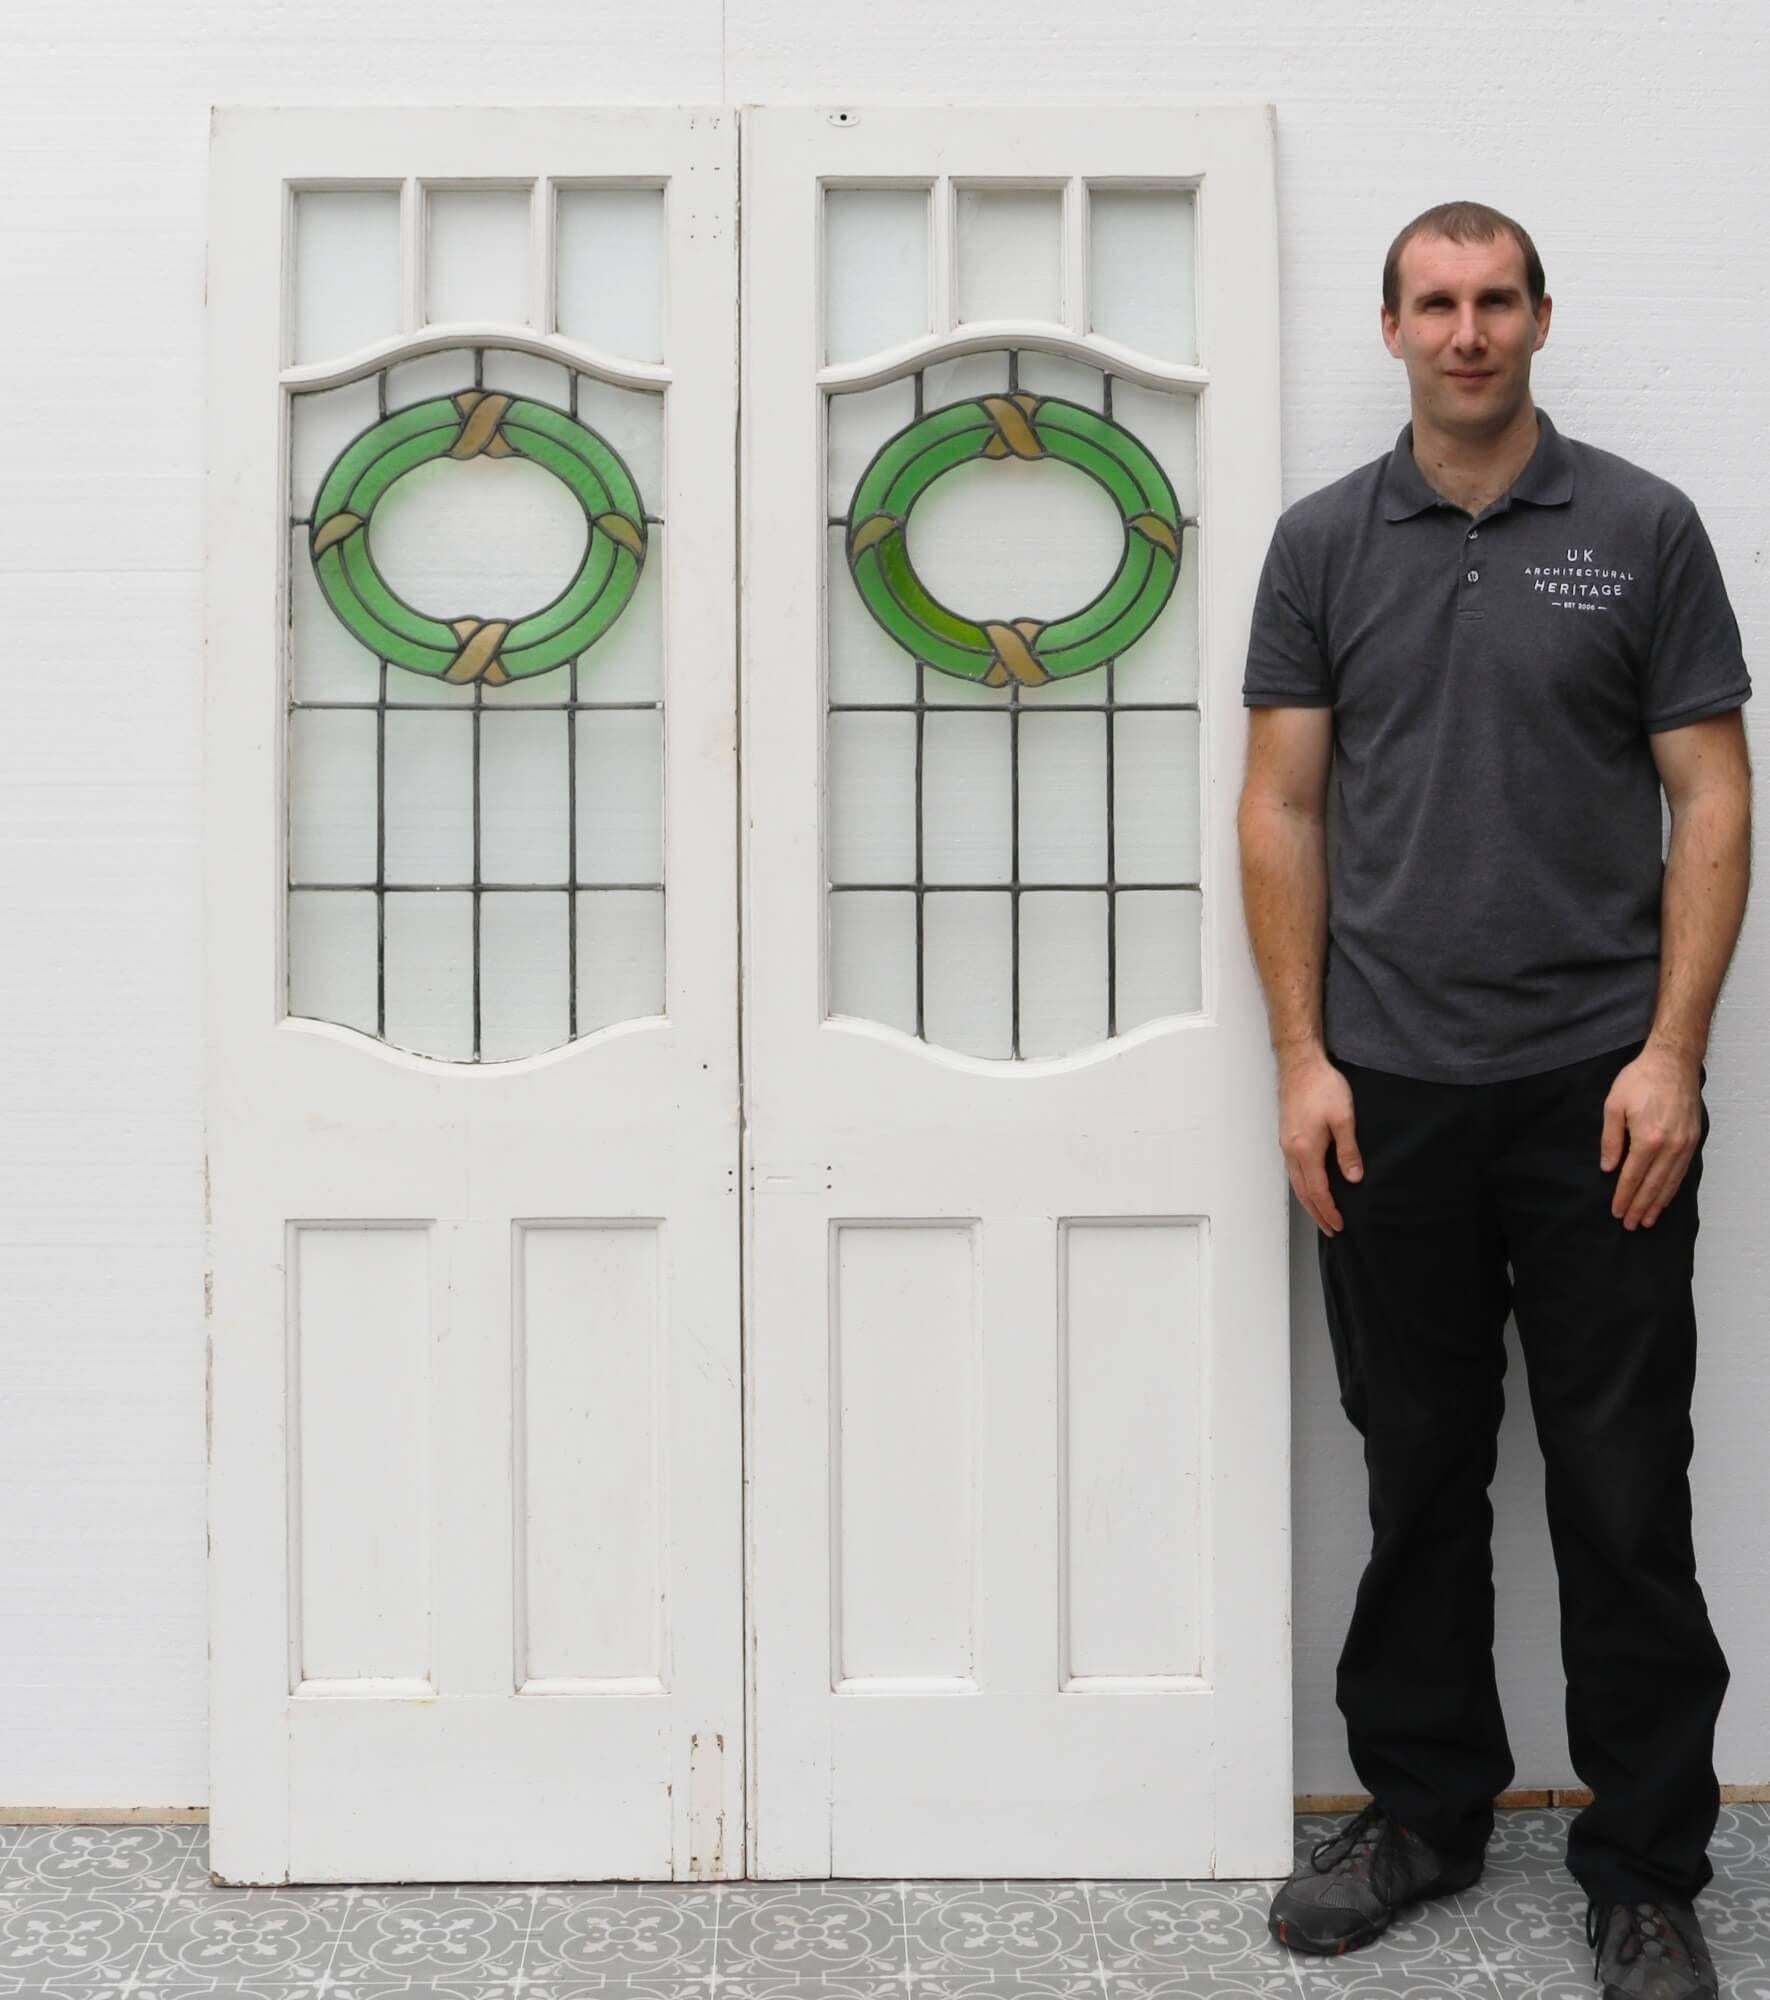 Sie können sich diese Haustüren mit Glasmalerei aus dem frühen 20. Jahrhundert vorstellen, die stolz auf der Veranda eines großen viktorianischen Stadthauses stehen. Jede Tür ist über 100 Jahre alt und verfügt über originales Bleiglas, das keine